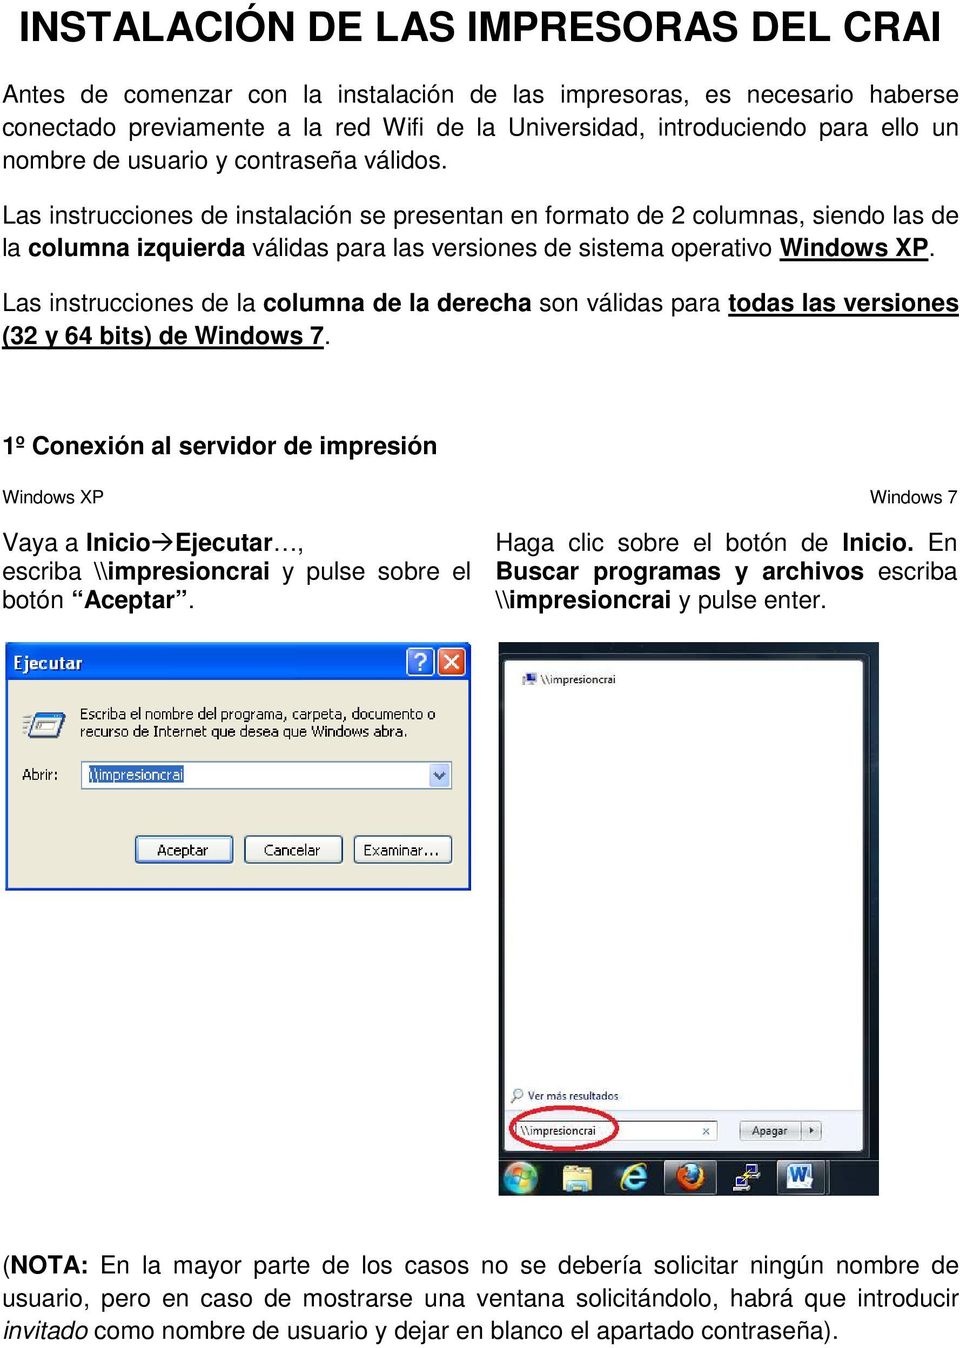 Las instrucciones de instalación se presentan en formato de 2 columnas, siendo las de la columna izquierda válidas para las versiones de sistema operativo Windows XP.